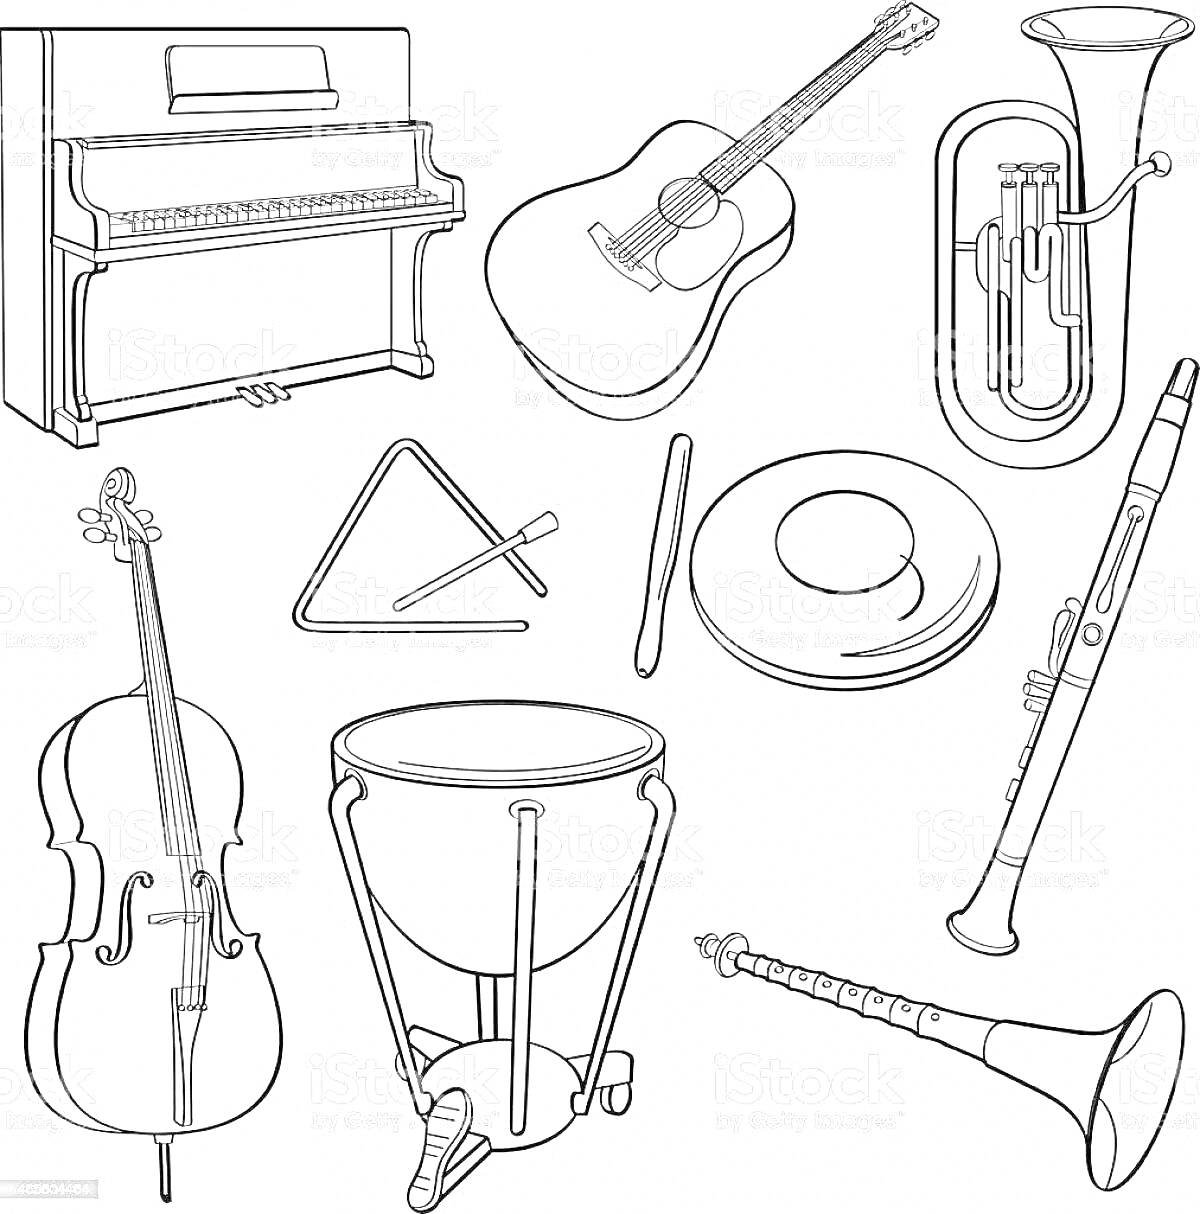 Симфонический оркестр инструменты: пианино, гитара, туба, треугольник, барабан (литавры), тарелка, кларнет, виолончель, корнет